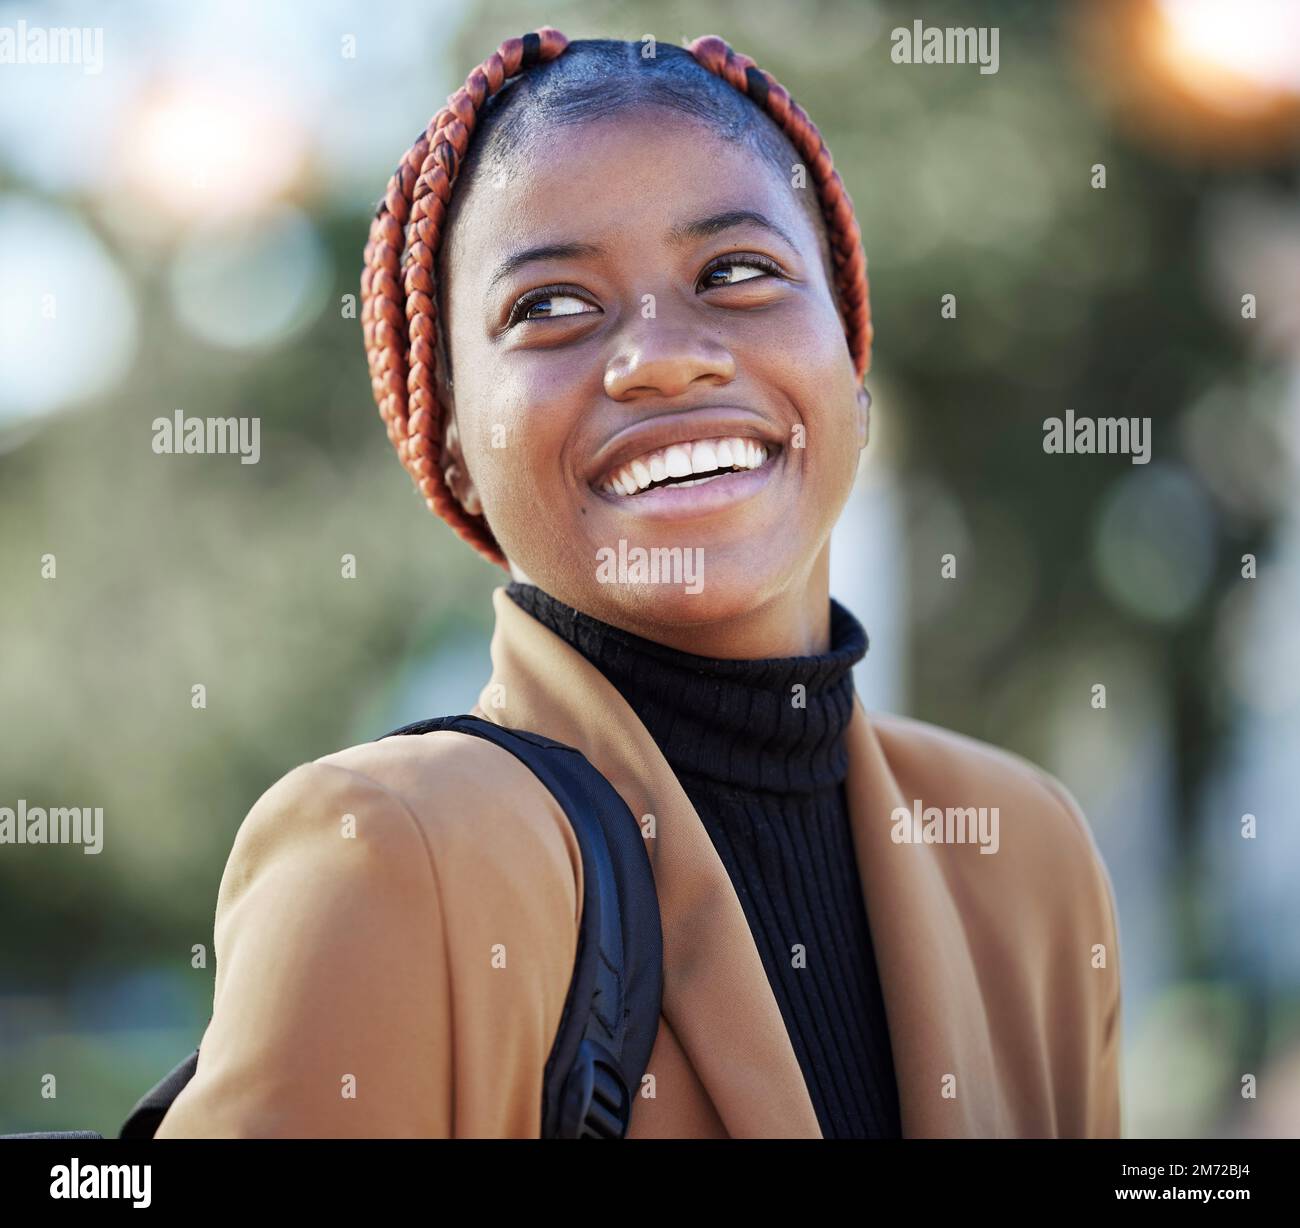 Gesicht, glückliche schwarze Frau und Schülerin im Park, bereit für Lernen, Studium und Bildung. Stipendien, Freiheit und Lächeln der gedankenverlorenen Frau Stockfoto